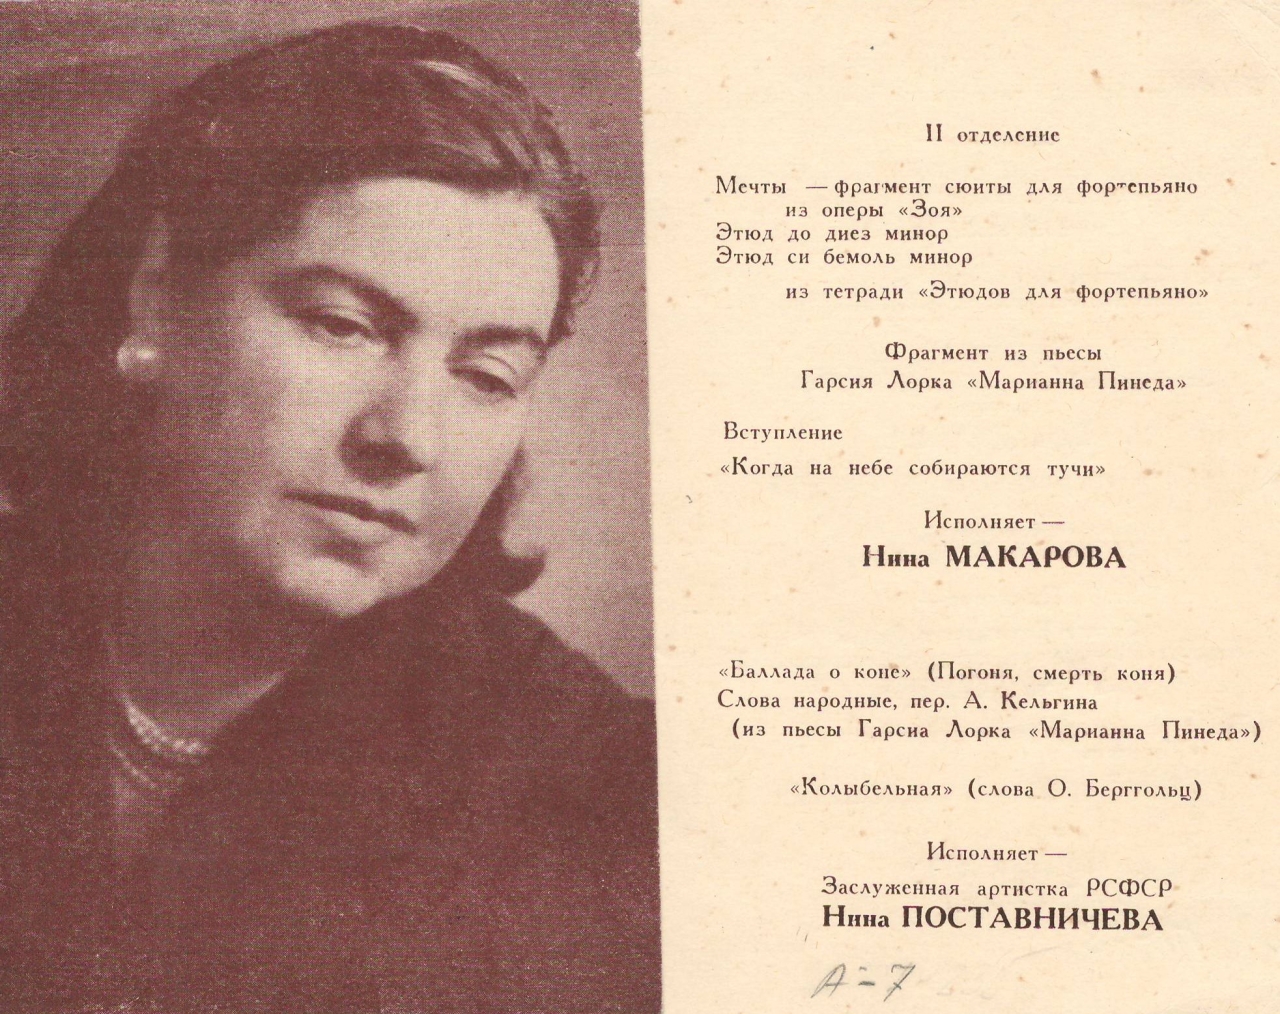  Հրավիրատոմս՝ կոմպոզիտոր Նինա Մակարովայի (Արամ Խաչատրյանի կնոջ) հեղինակային երեկոյի.  Մոսկվա, 20 մայիսի, 1964 թ.: